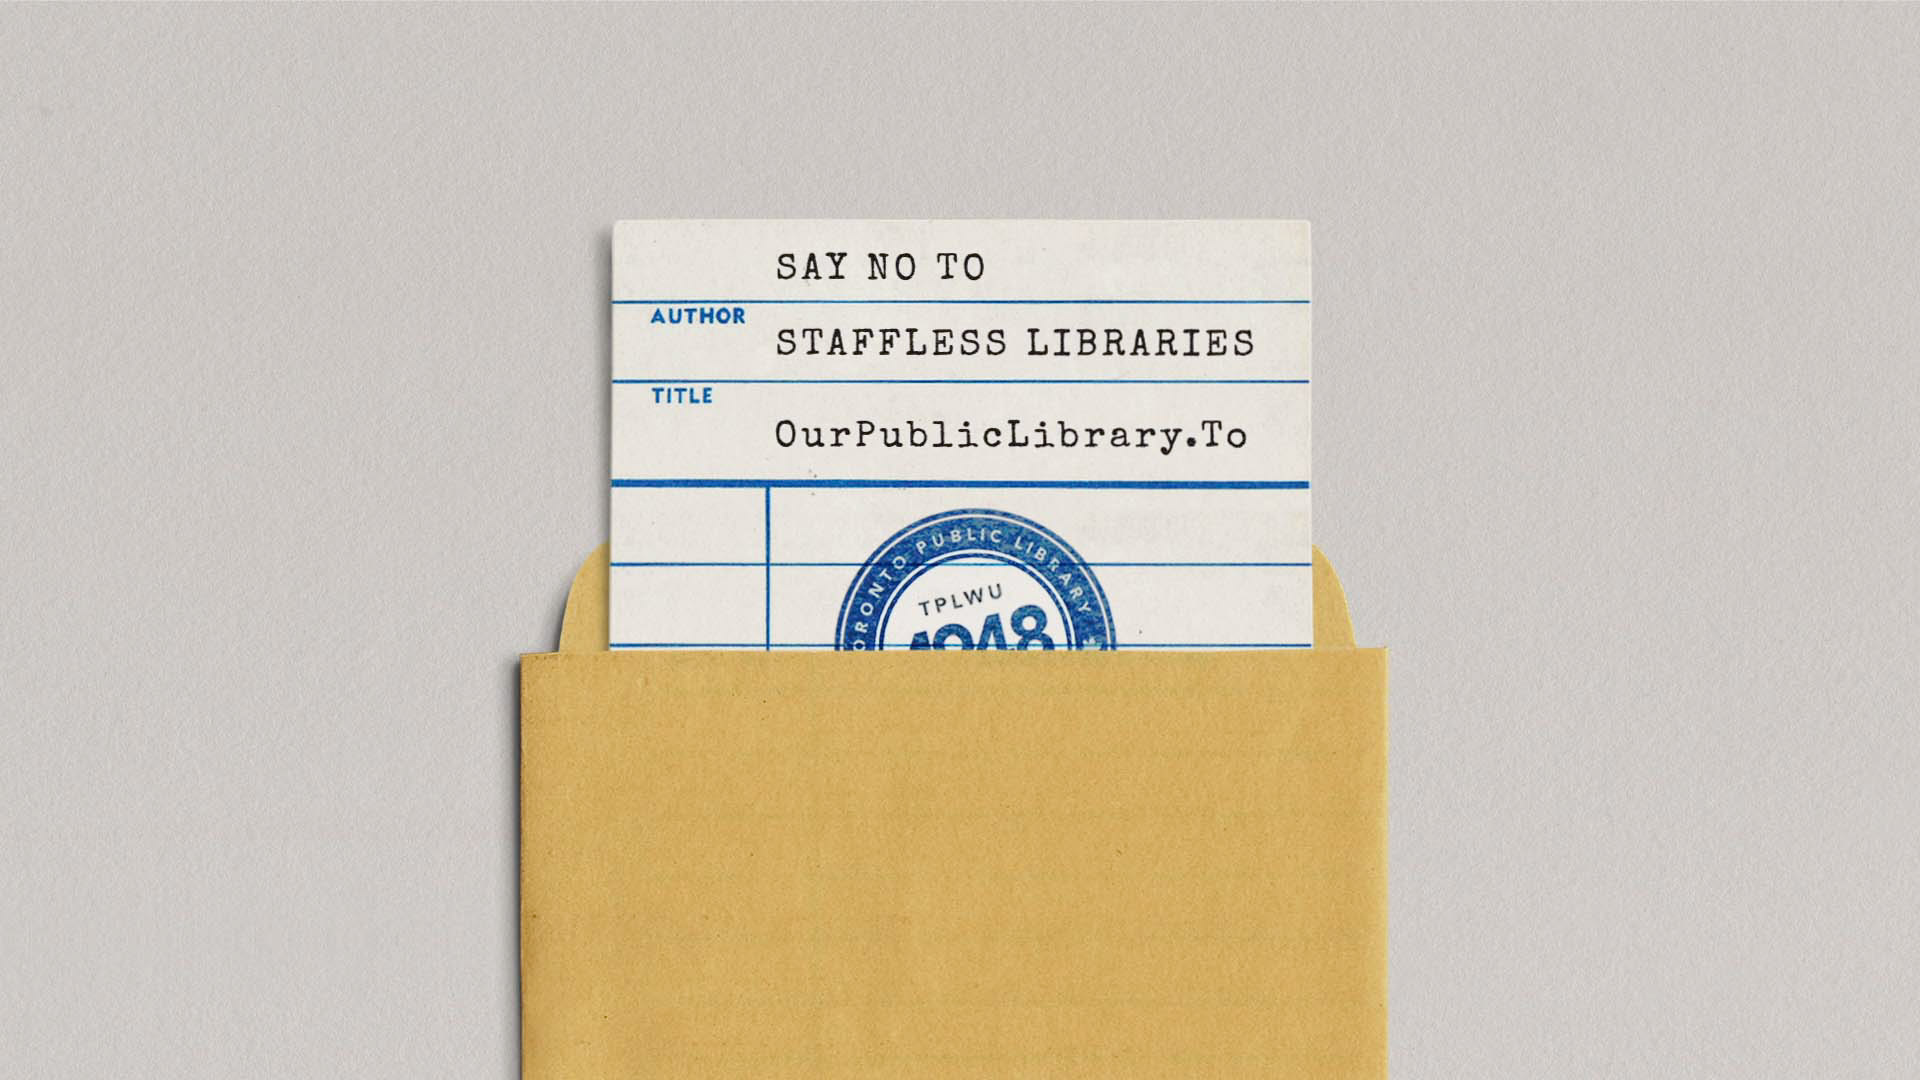 Staffless Libraries